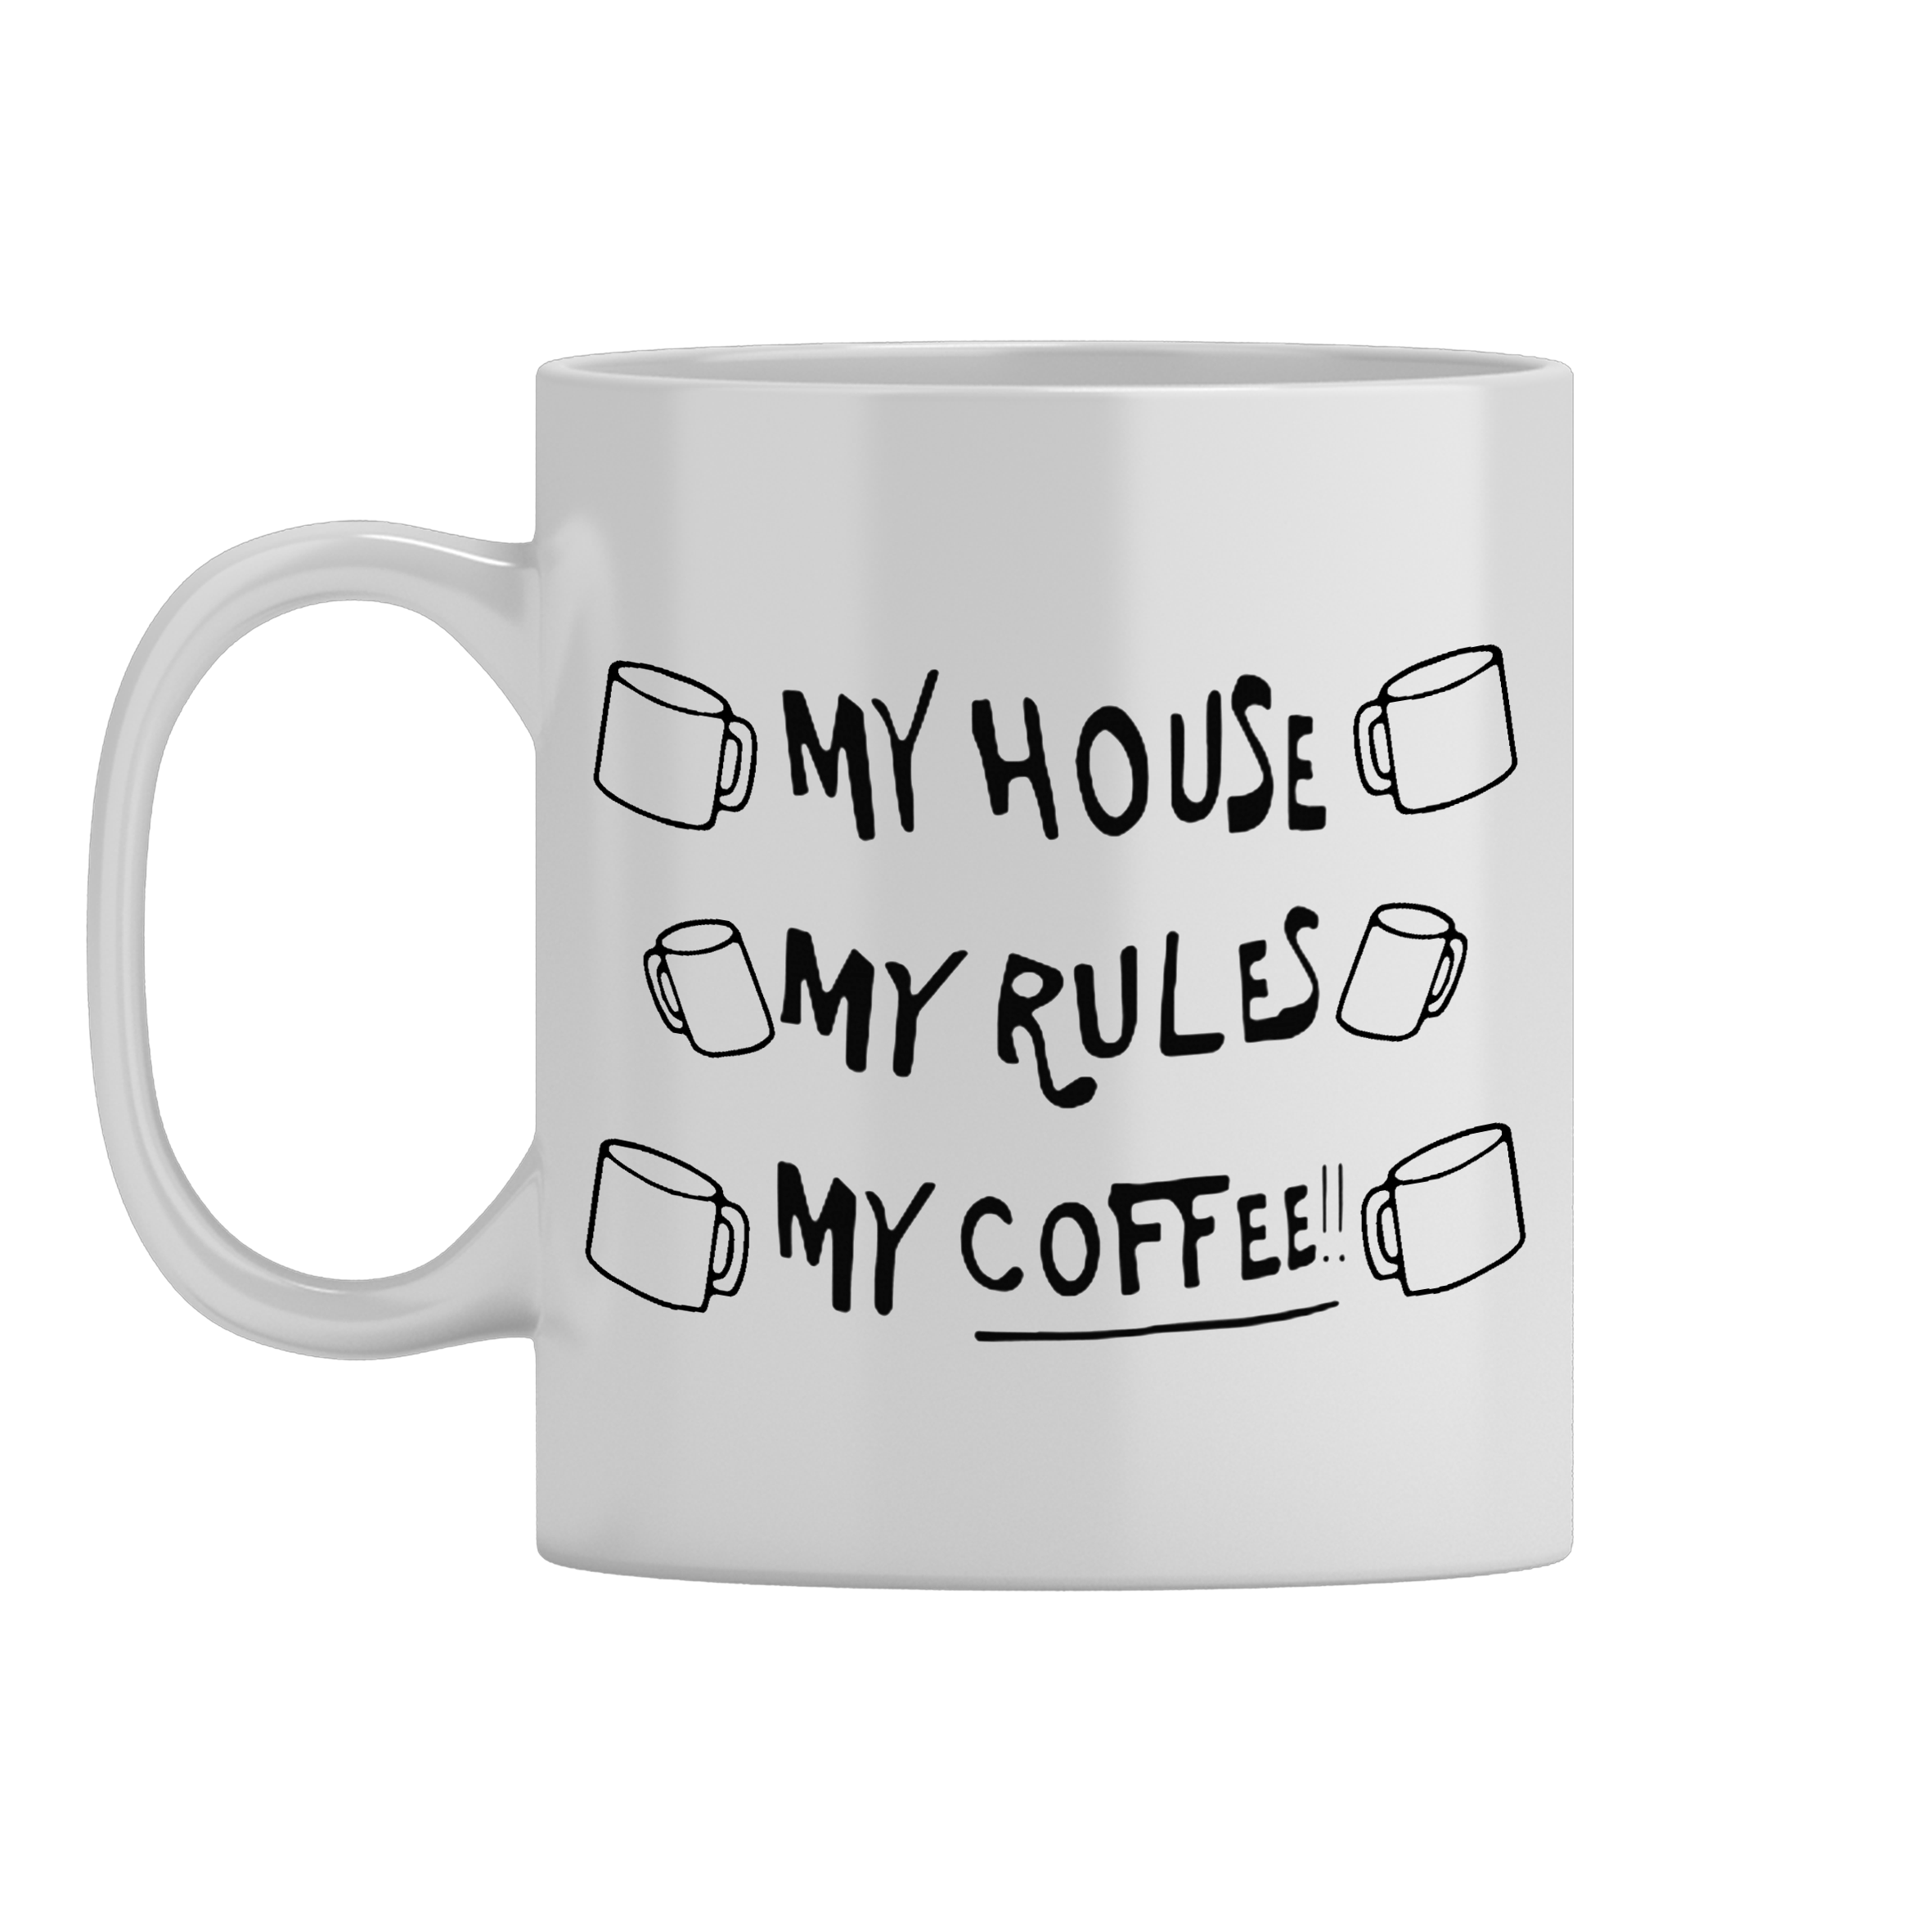 КРУЖКИ "My house, my rules, my coffee"